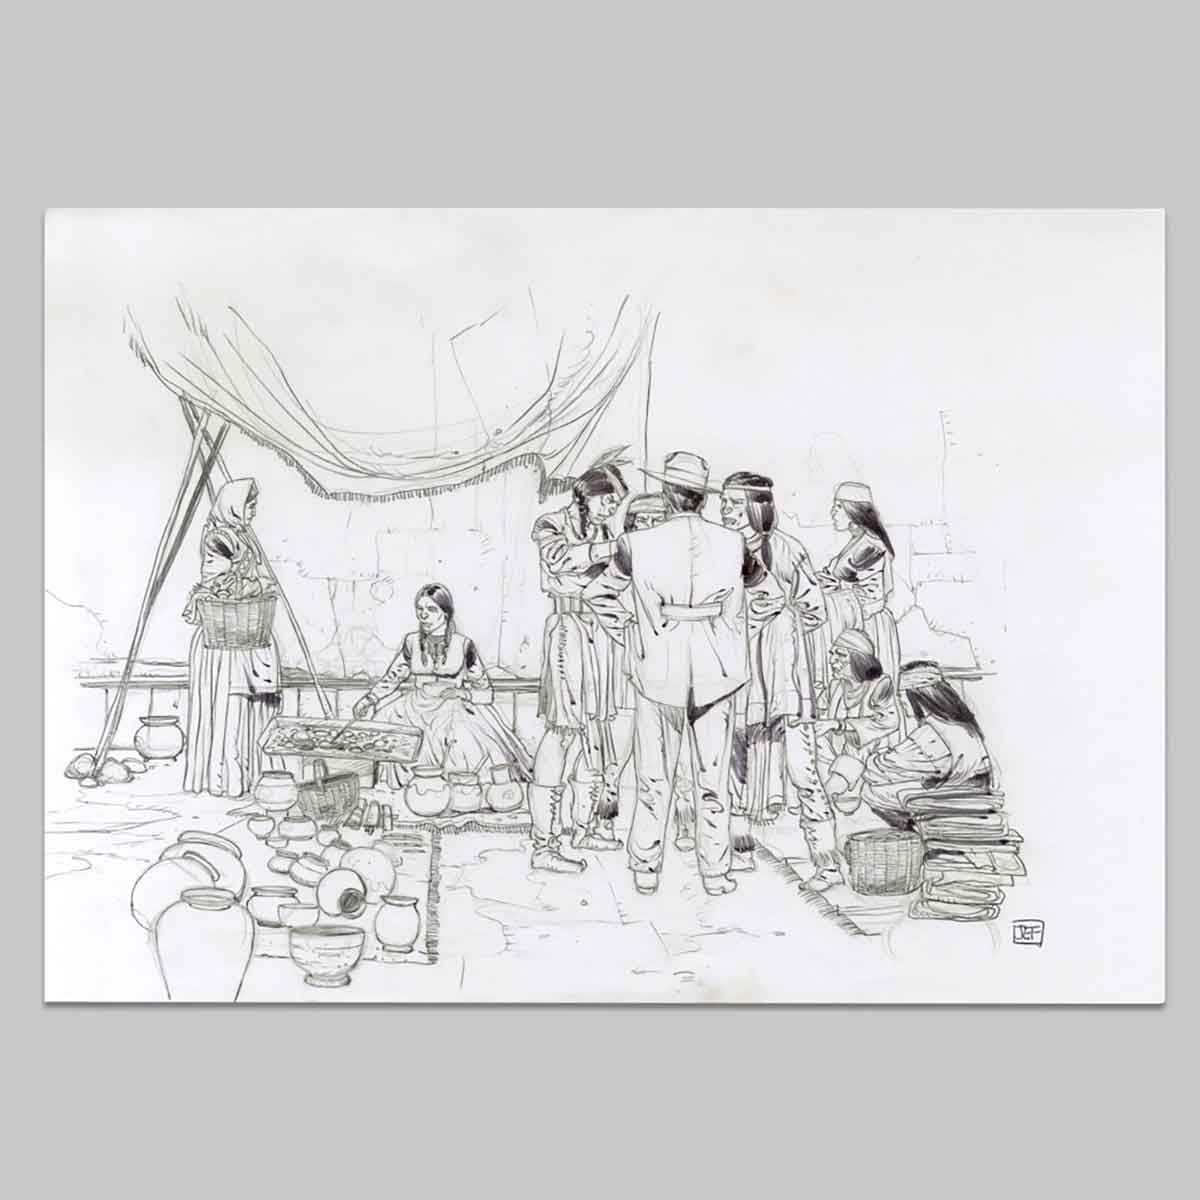 Illustration originale Geronimo, La tribu de Geronimo les apaches Chiricahua faisaient des affaires sur les marchés au Mexique